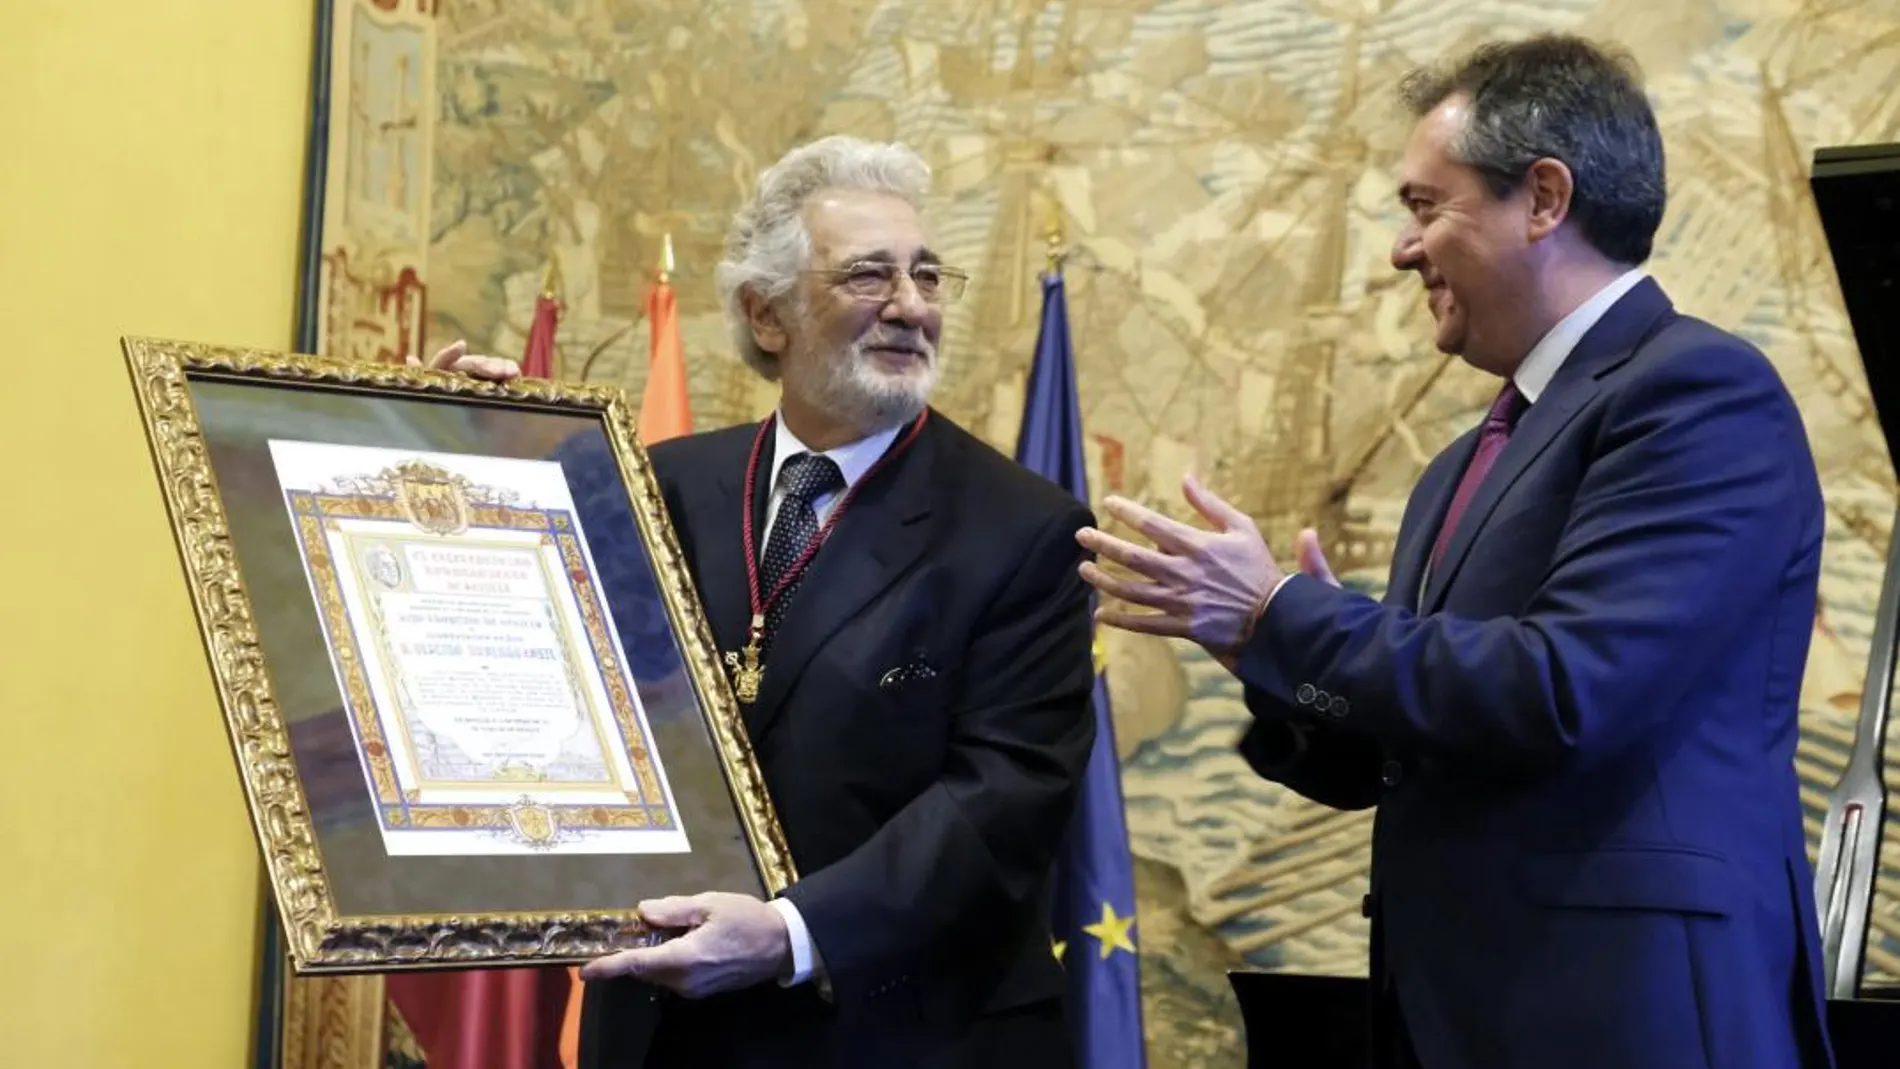 El tenor Plácido Domingo (i), es aplaudido por el alcalde sevillano, Juan Espadas, tras hacerle entrega de la medalla de la ciudad al ser nombrado hijo adoptivo de Sevilla